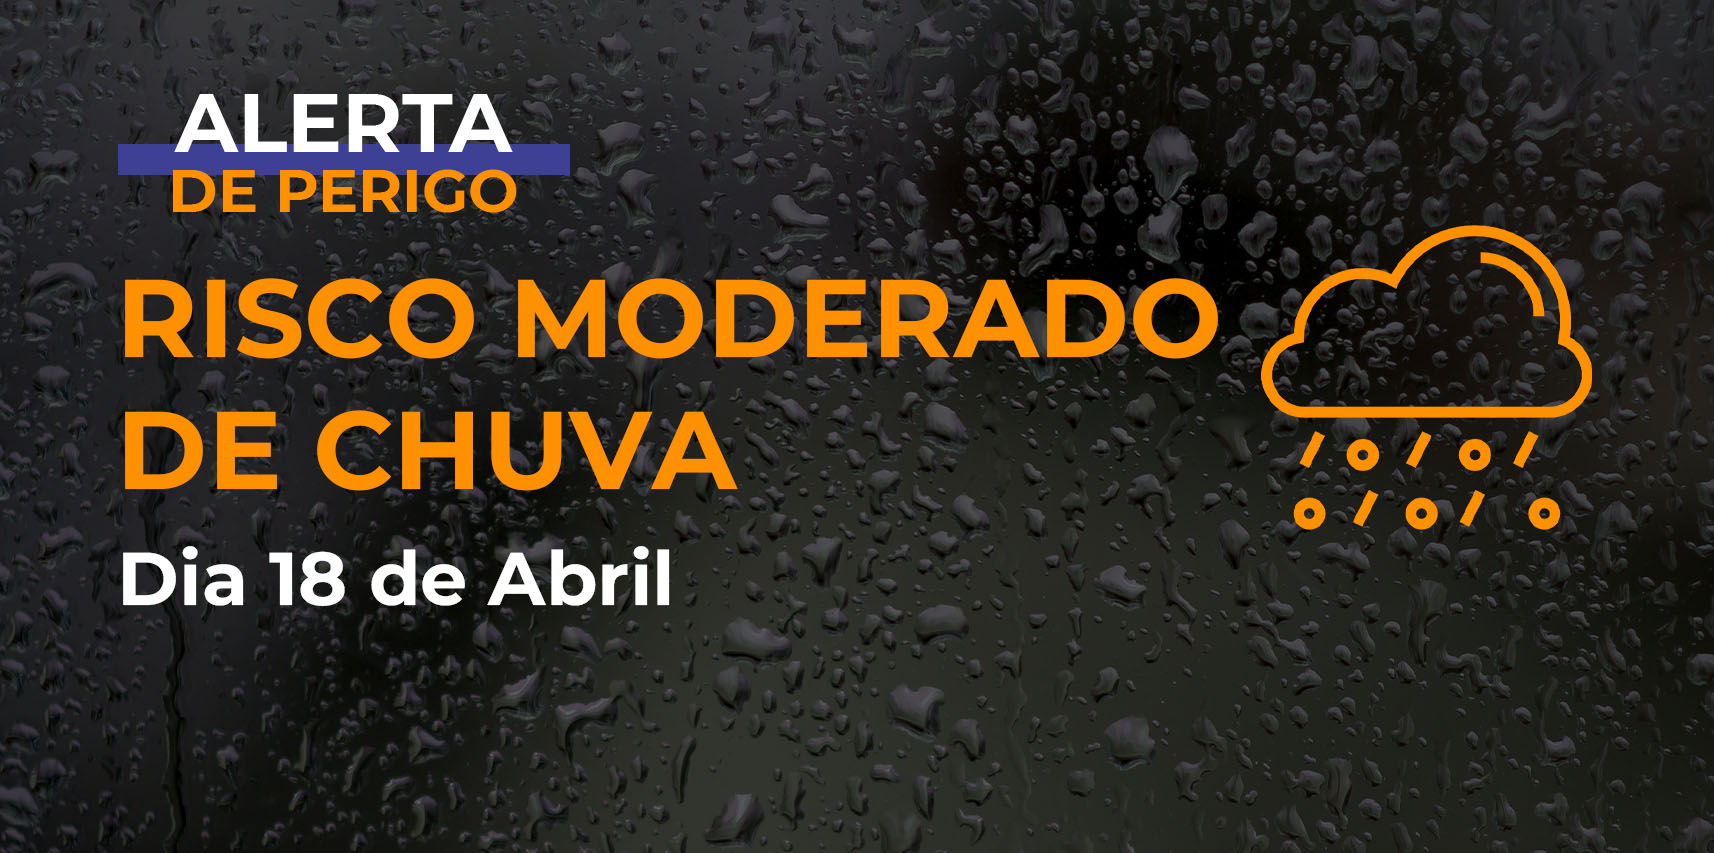 Defesa Civil de Vargem Alta emite alerta para o Risco Moderado de Chuva para esta quinta-feira, 18 de abril